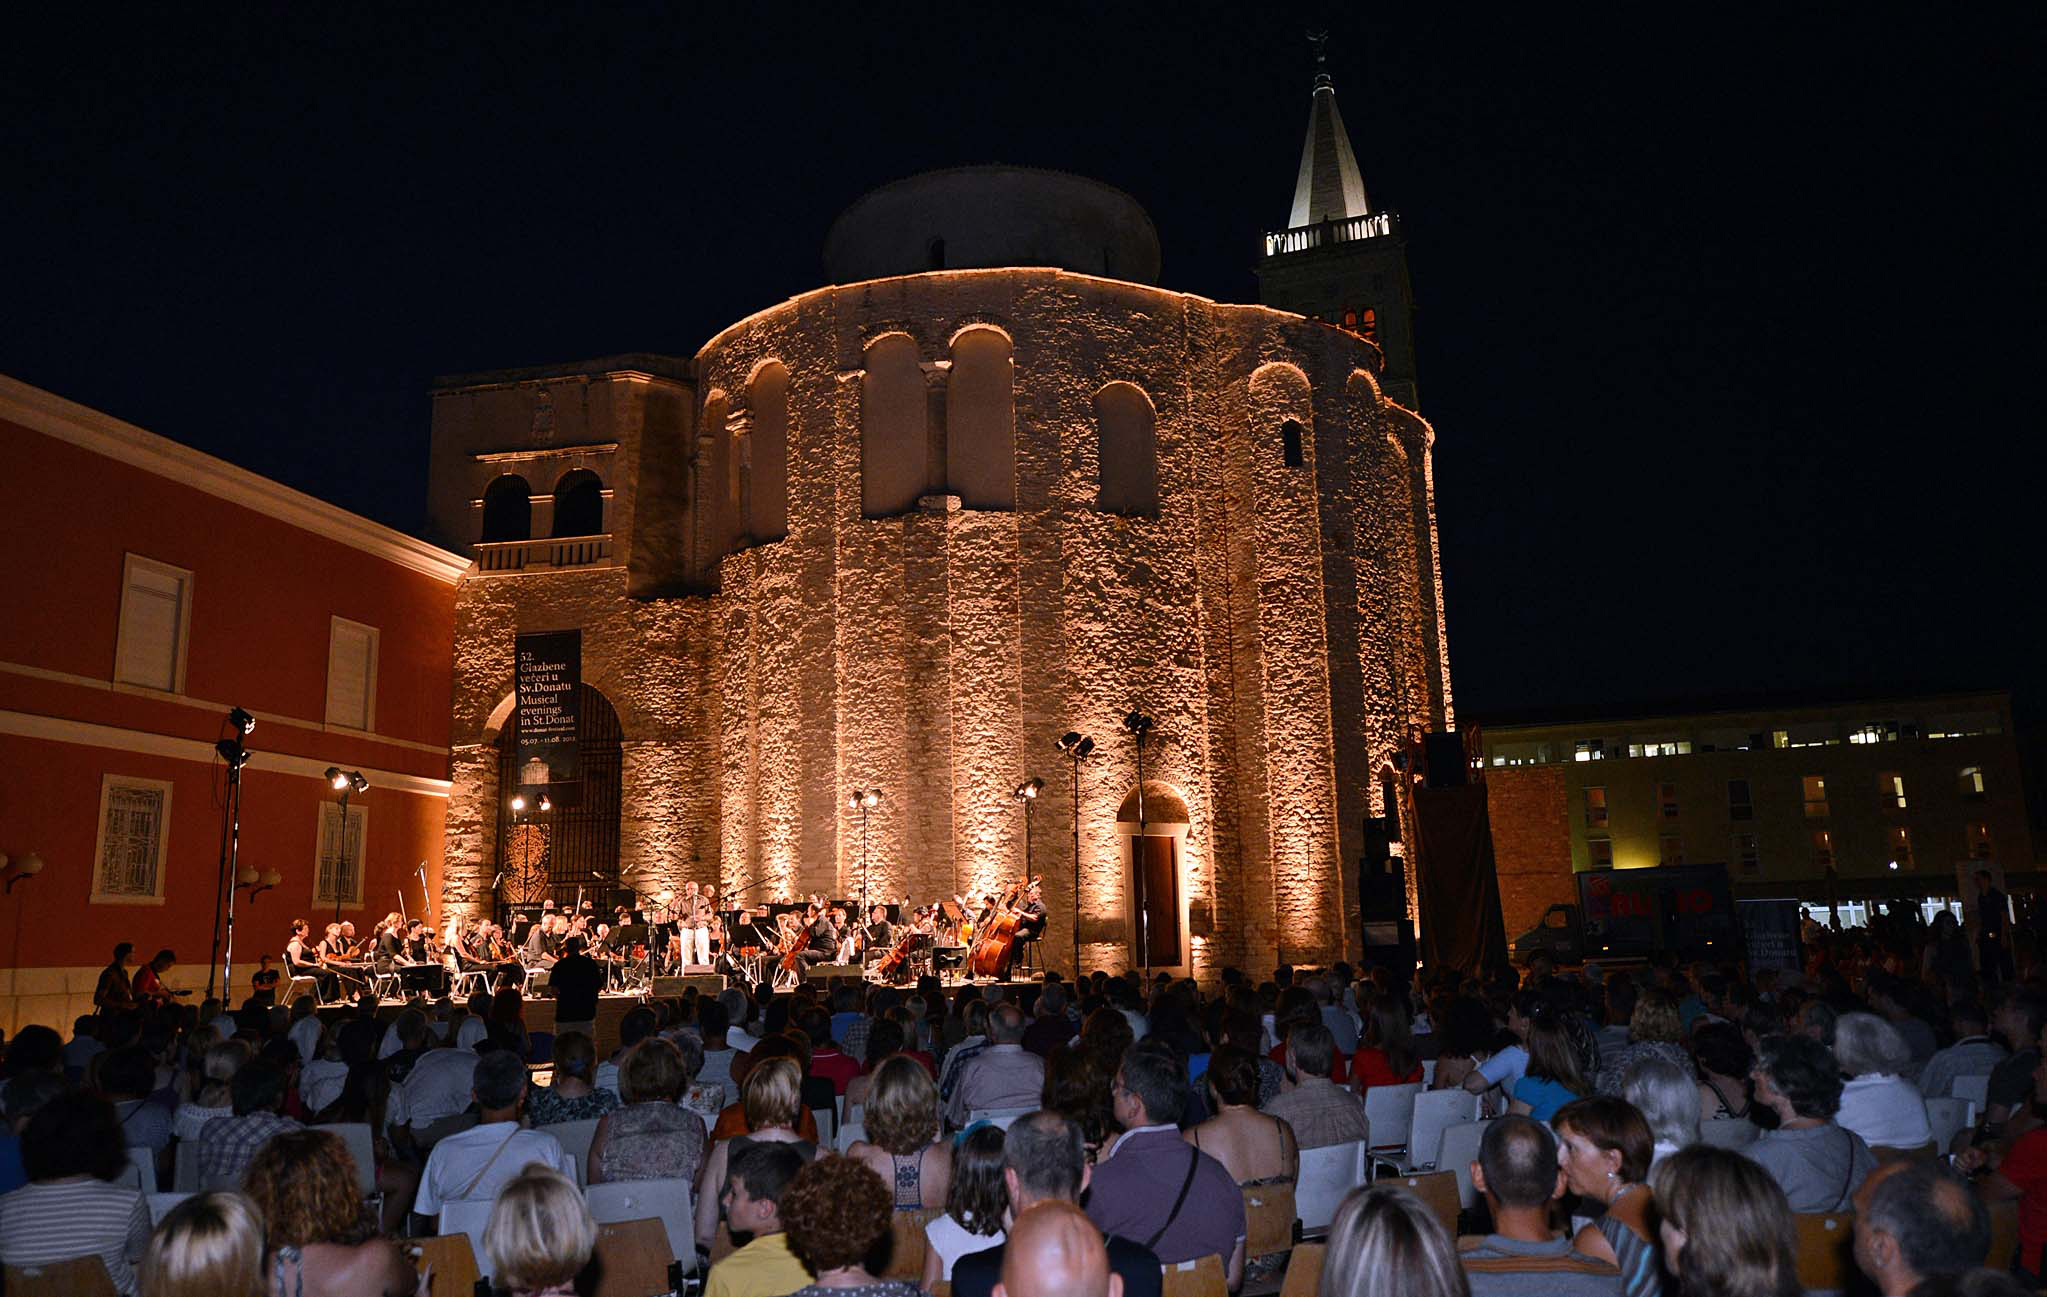 Zadar, 05.07.2012 - Sveèano otvorenje jednog od najstarijih hrvatskih festivala, Meðunarodnog ljetnog glazbenog festivala u Zadru - 52. glazbene veèeri u Sv. Donatu. 
foto FaH/ t